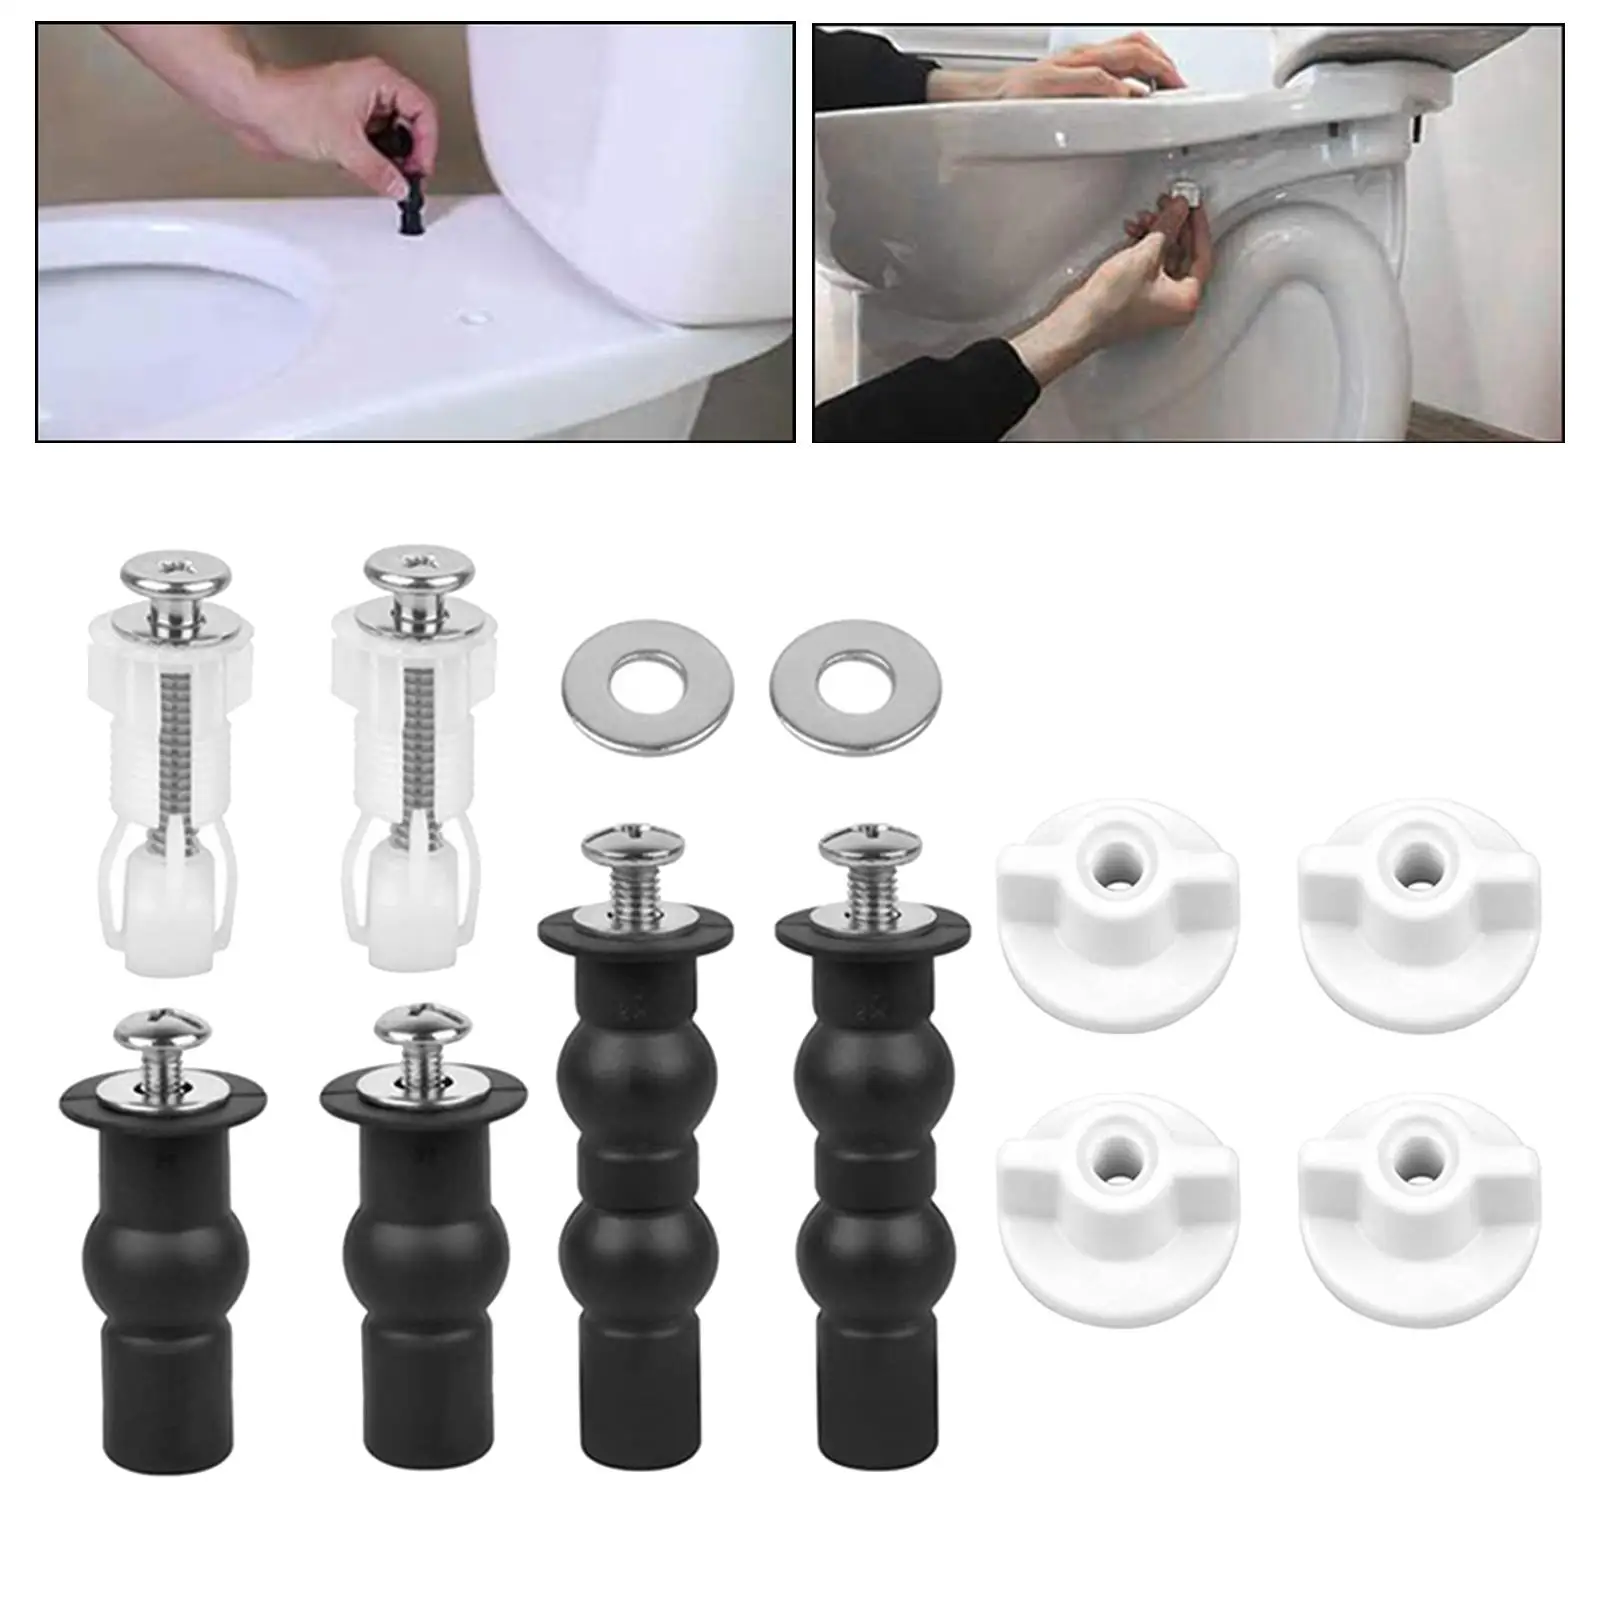 Universal Screw Toilet Toilet Seat Fixing Screws Toilet Cover Accessories Expansion Screws Toilet Seat Installation Kit